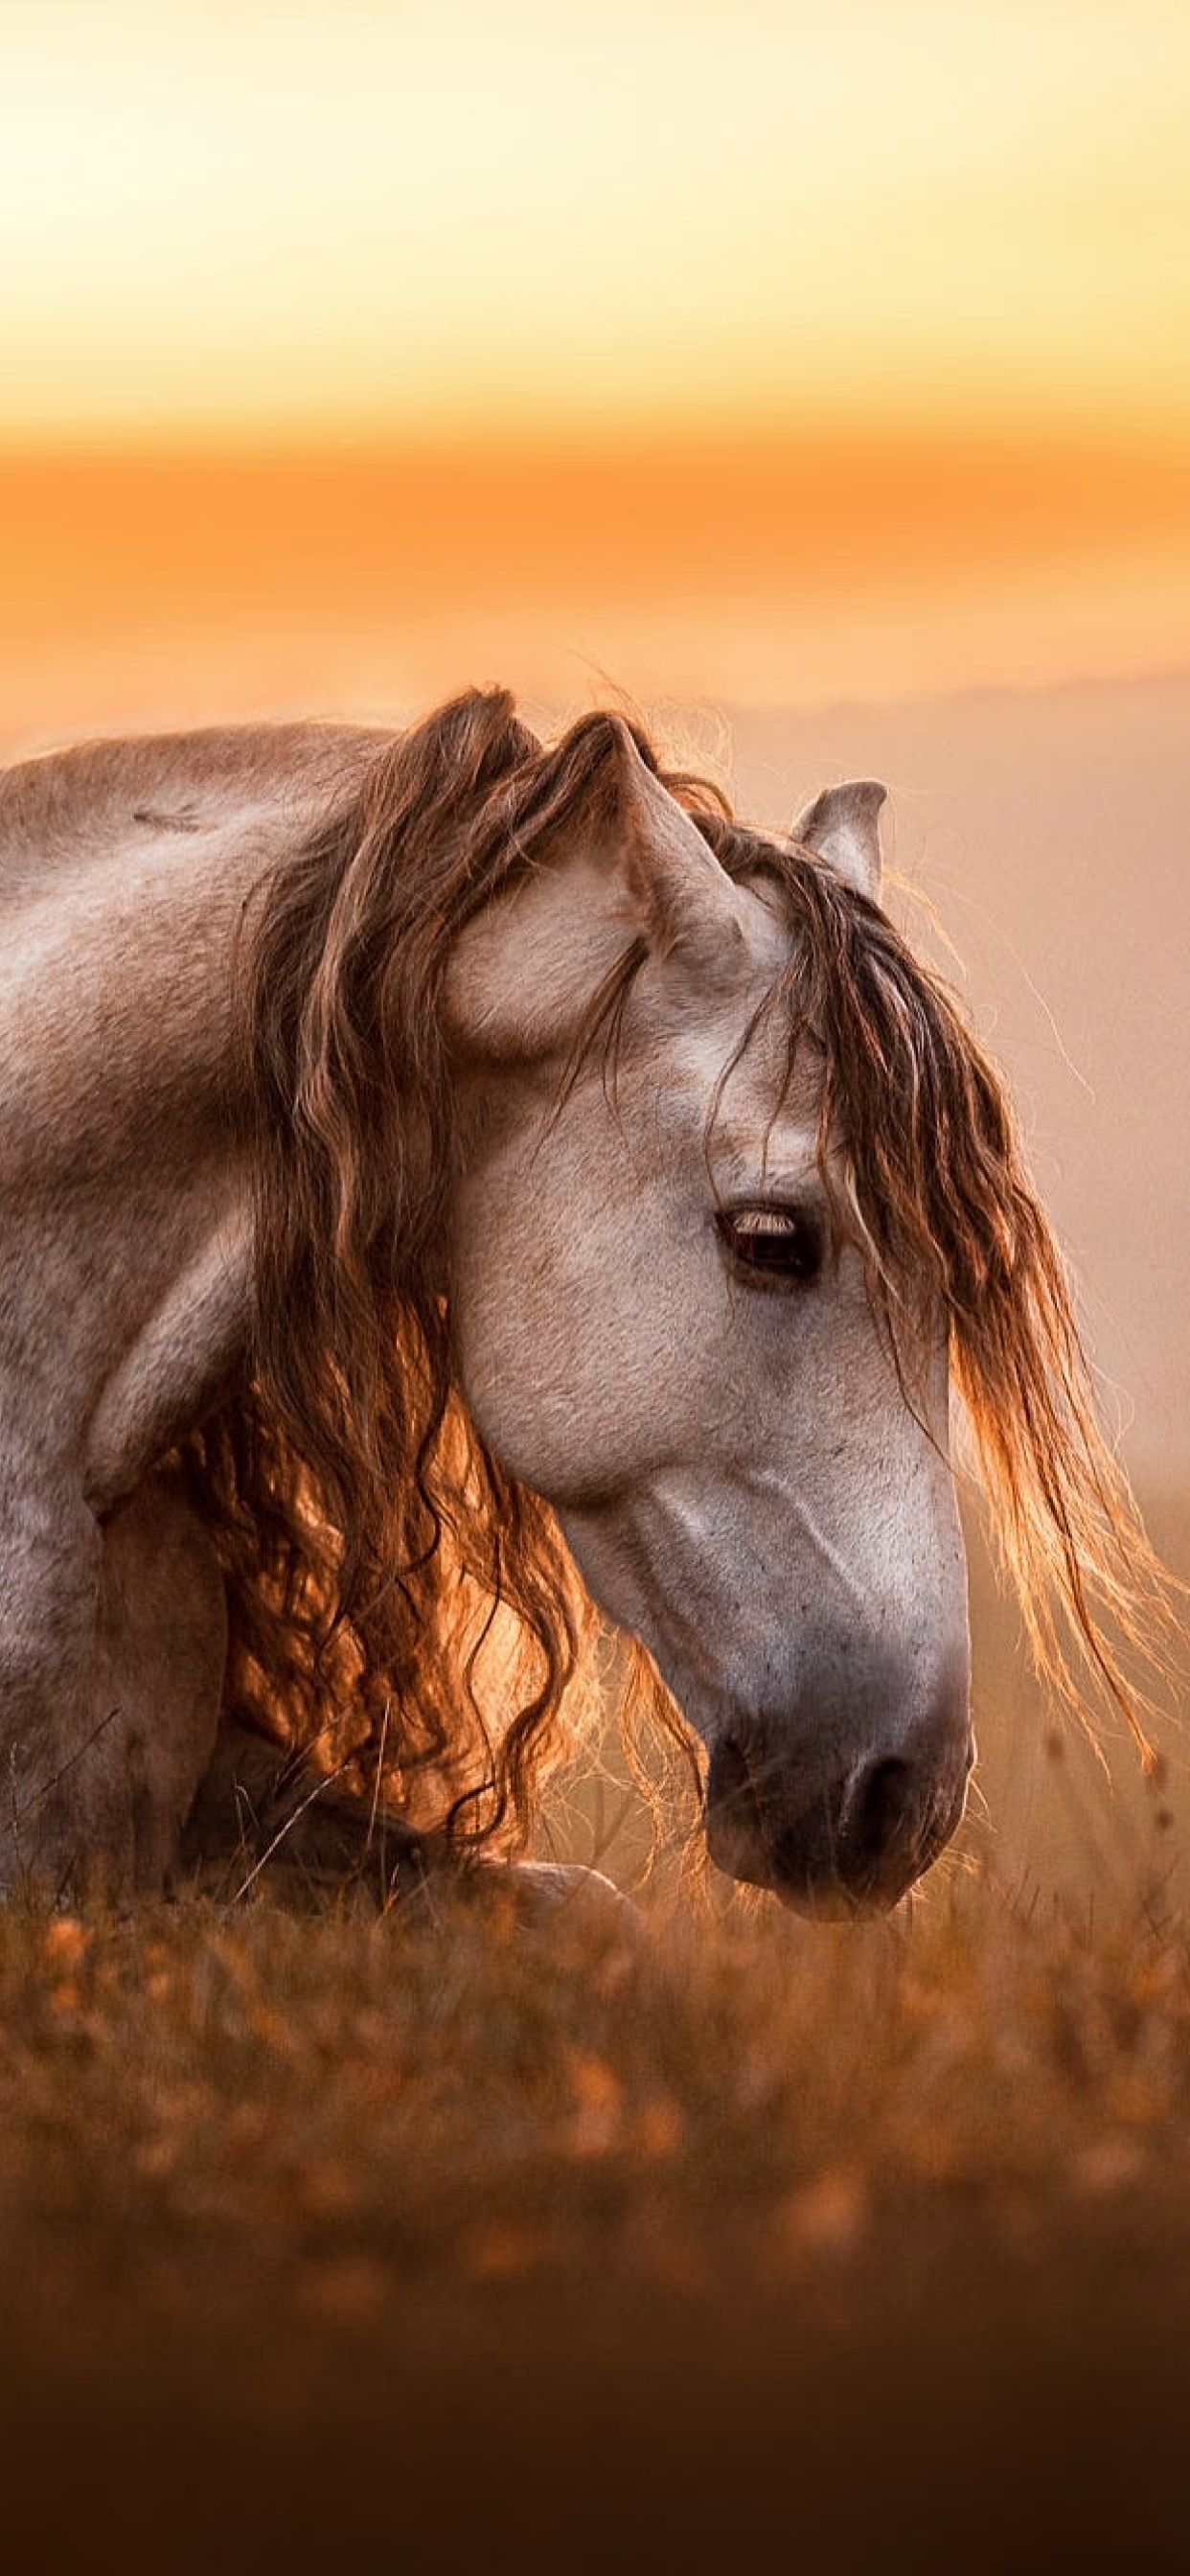 Vastu Tips: Running Horses Painting | घर पर क्यों लगाएं दौड़ते हुए घोड़ो की  फोटो? | Boldsky - YouTube